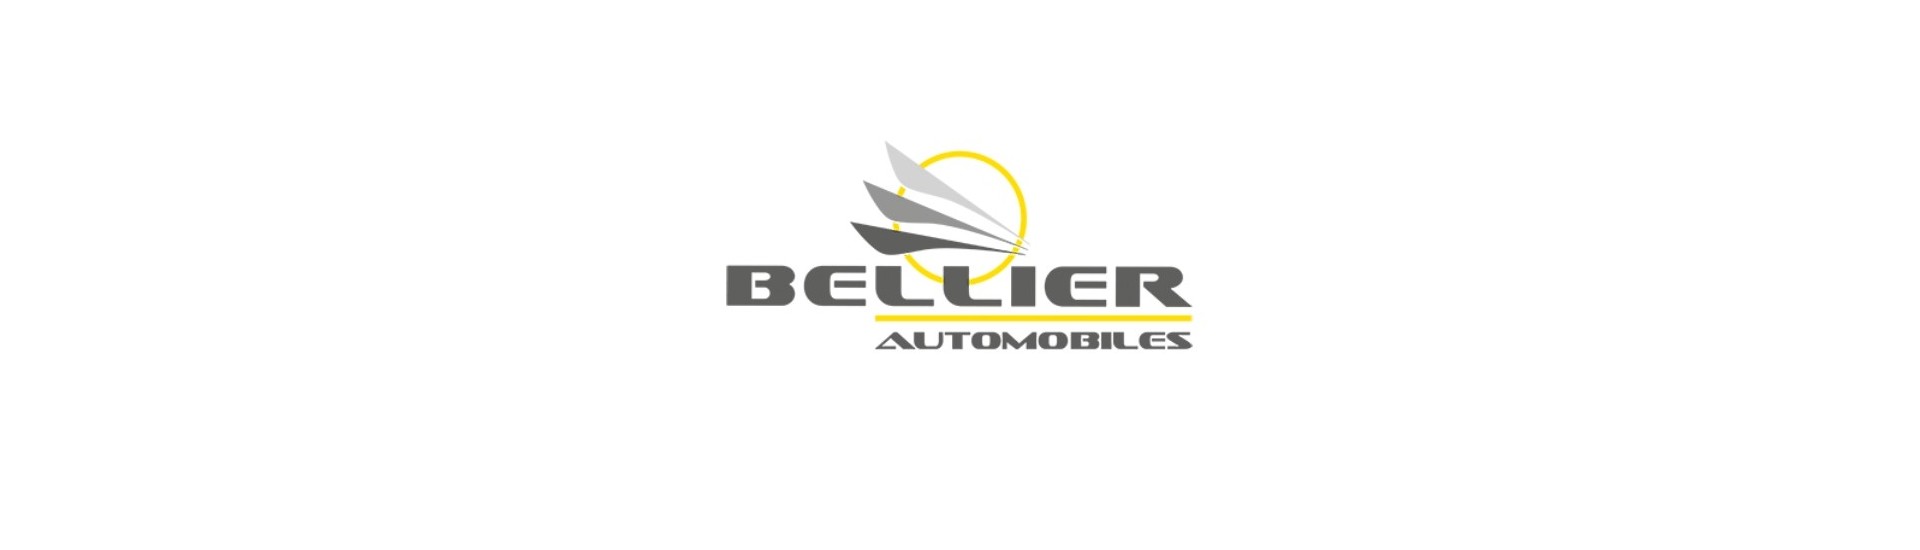 Logo și aderare la cel mai bun preț pentru o mașină fără permis Bellier